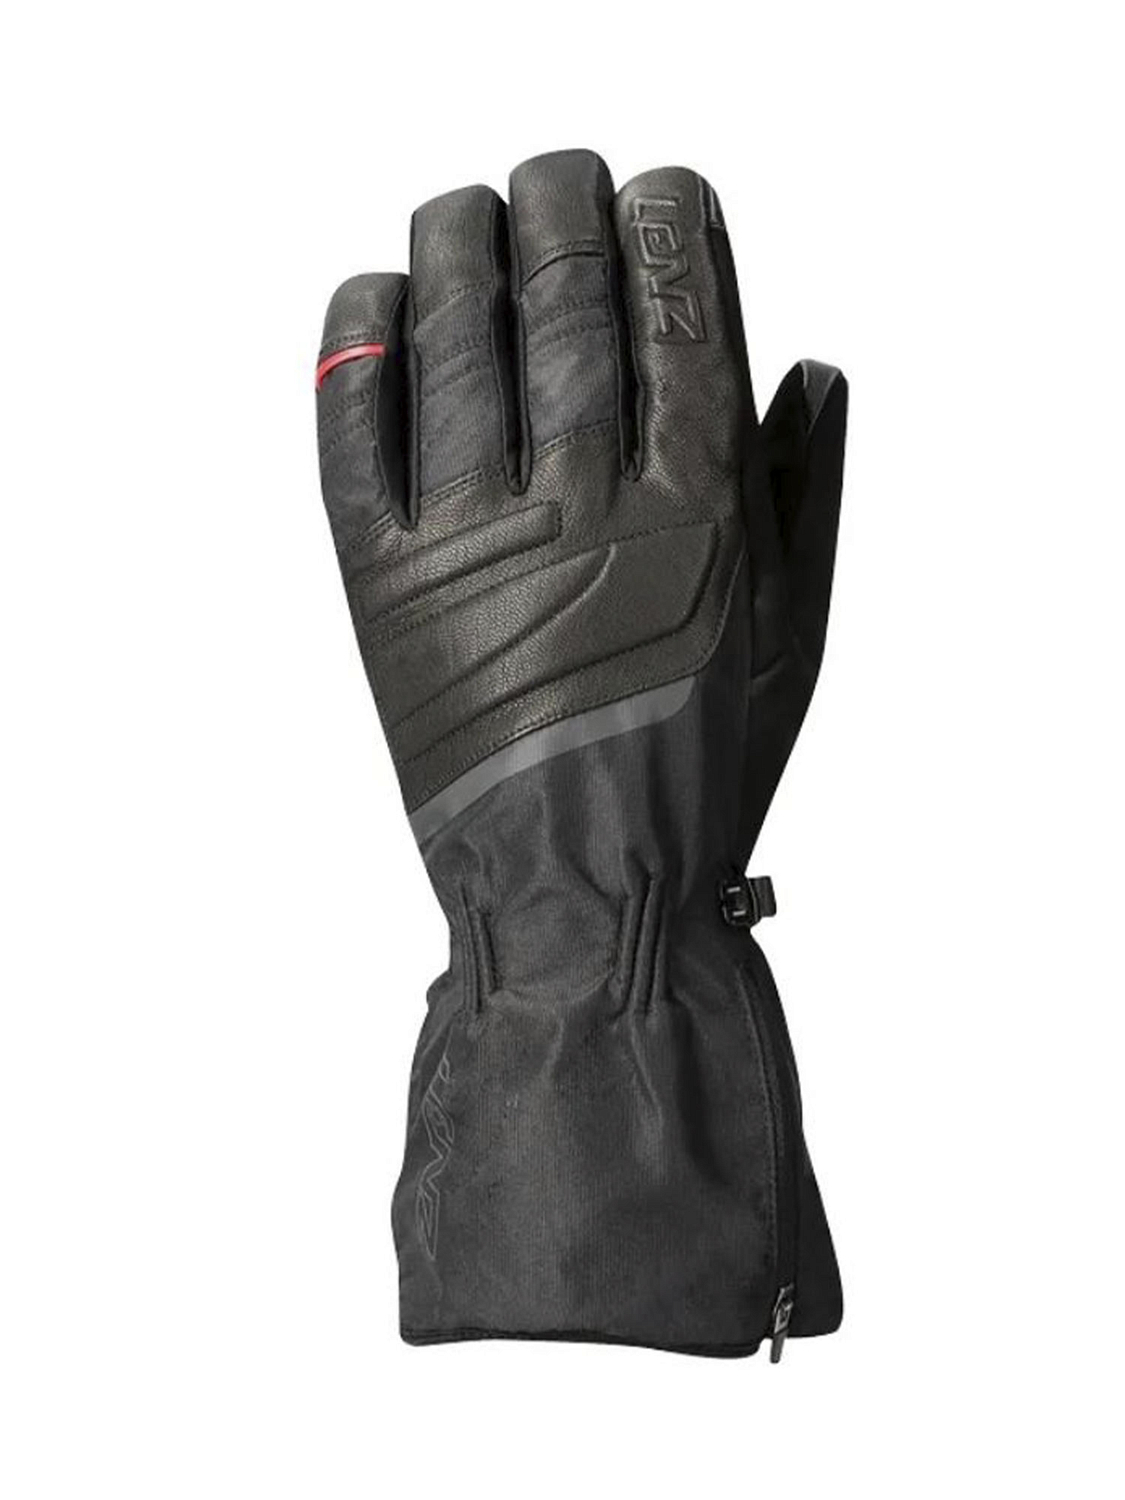 Перчатки с обогревом LENZ Heat Glove 6.0 Finger Cap Urban Line Black